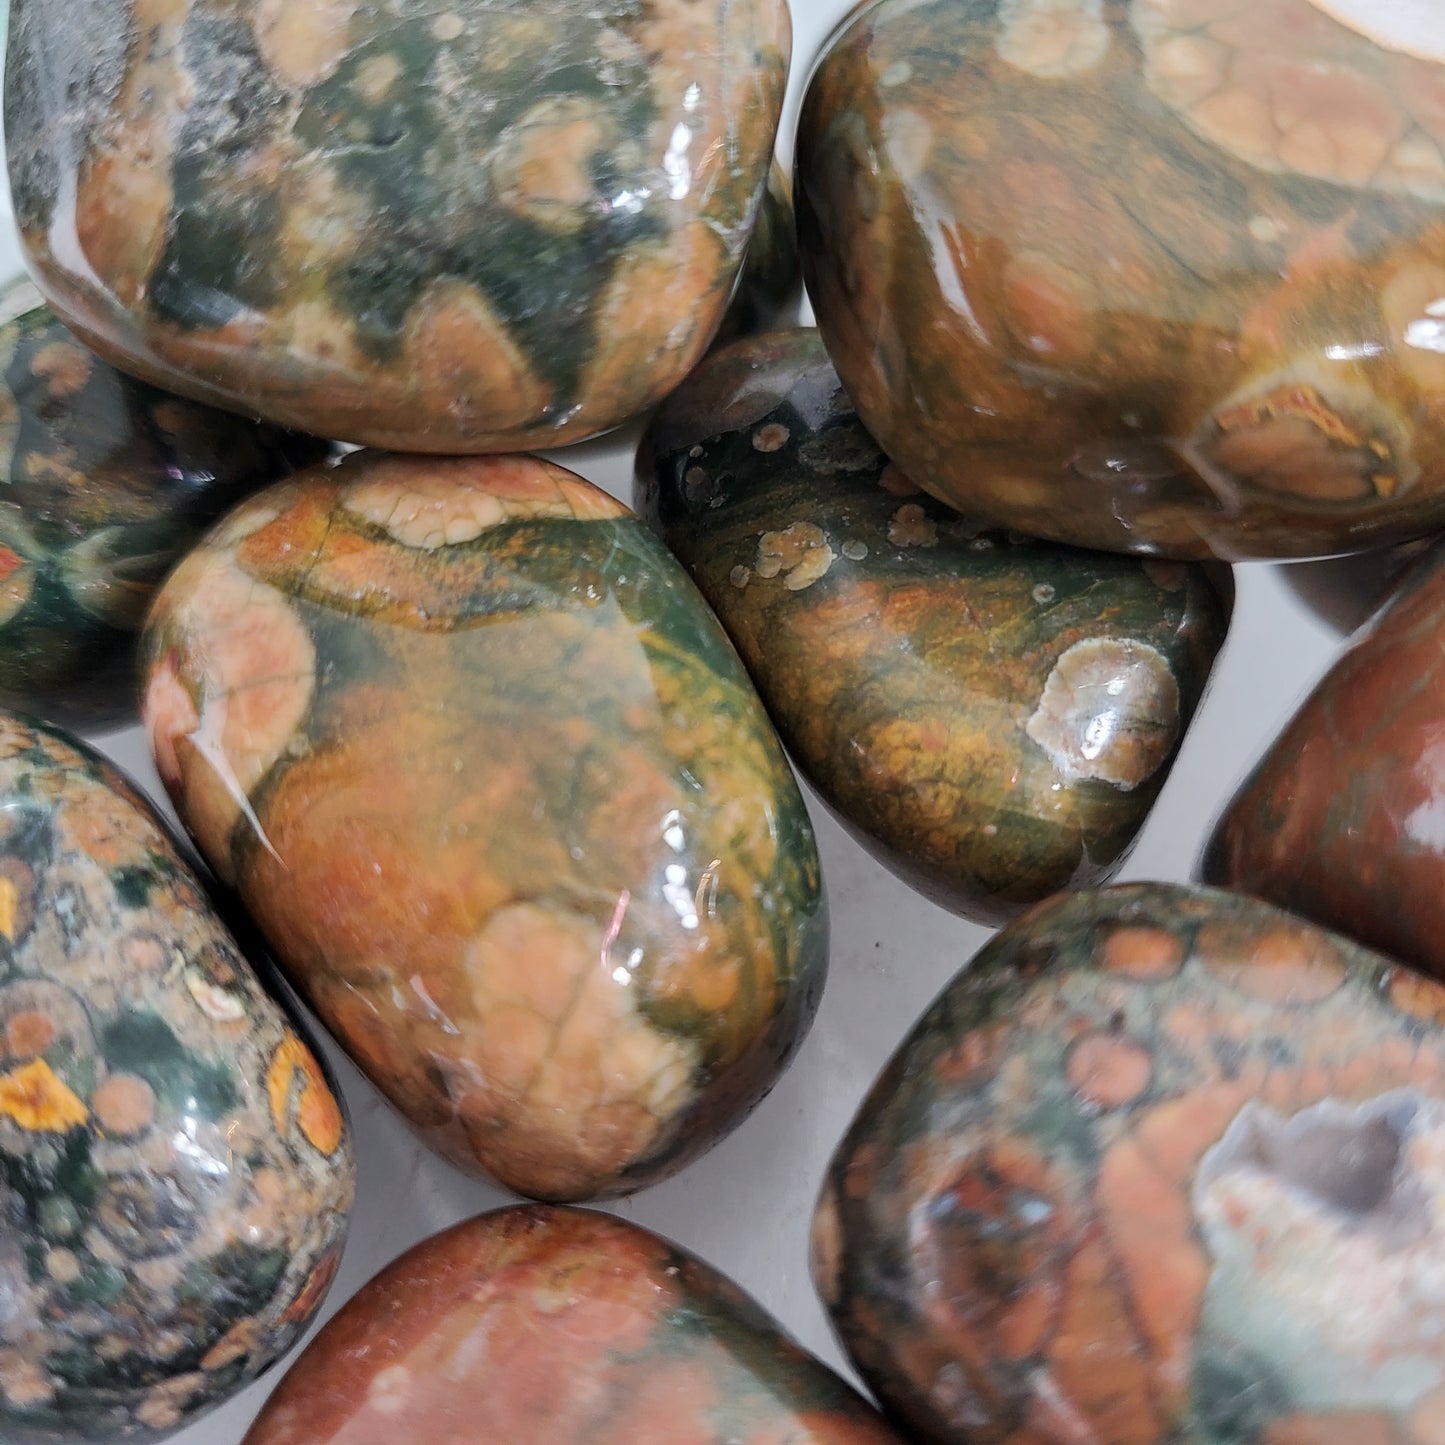 Rhyolite Tumbled Stone - Crystal Happenings